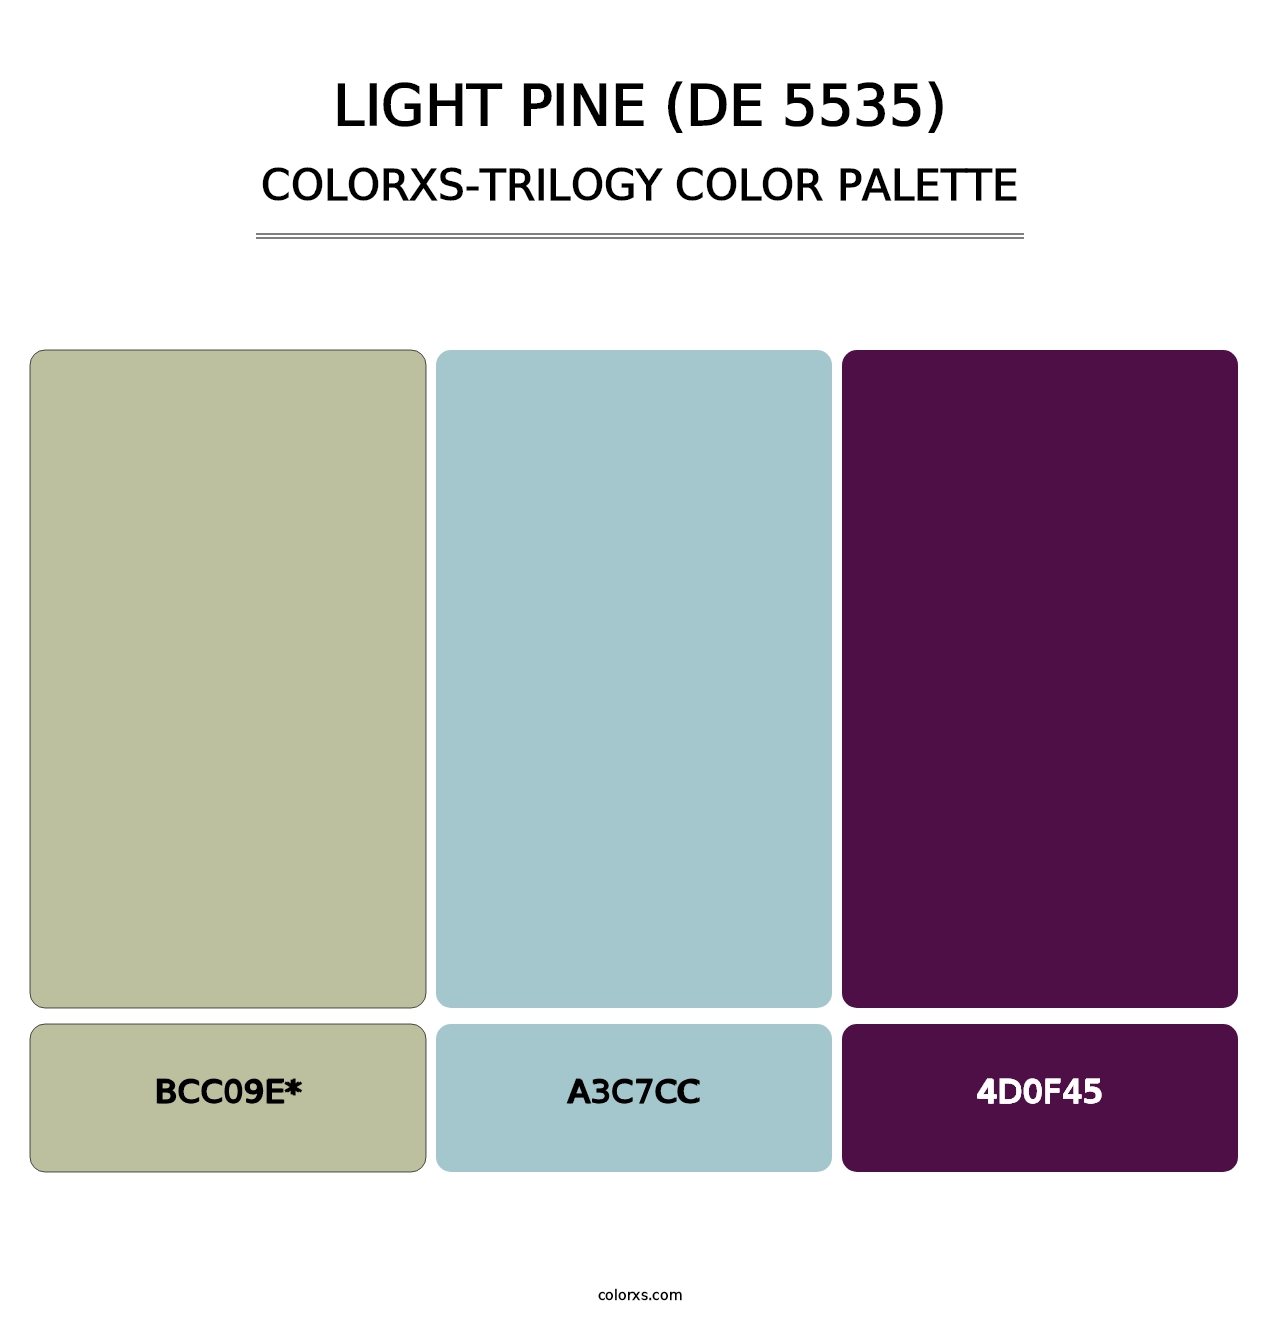 Light Pine (DE 5535) - Colorxs Trilogy Palette